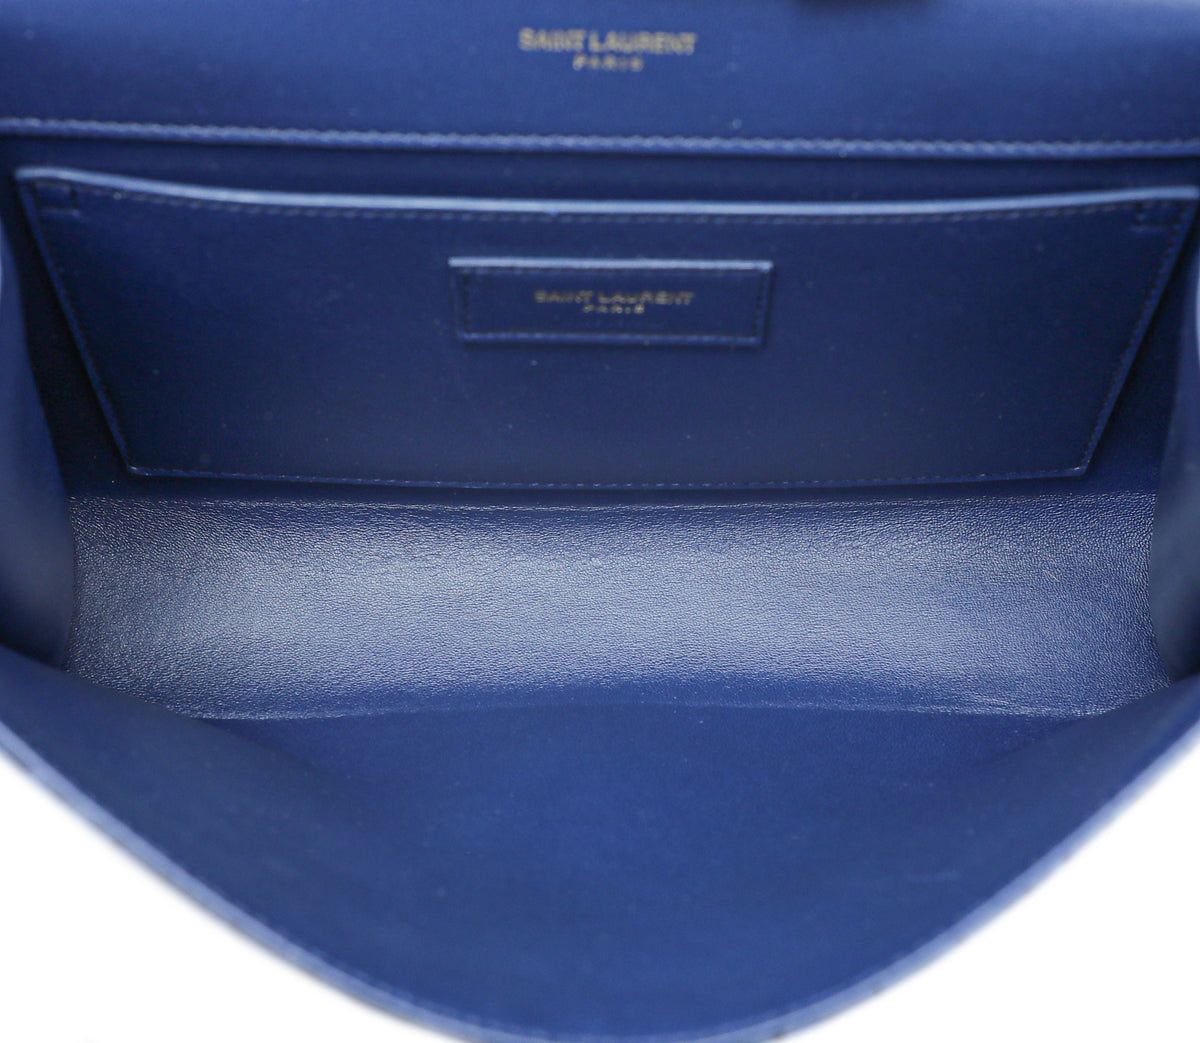 YSL Navy Blue Monogram Croc Velvet Embossed Kate Medium Bag